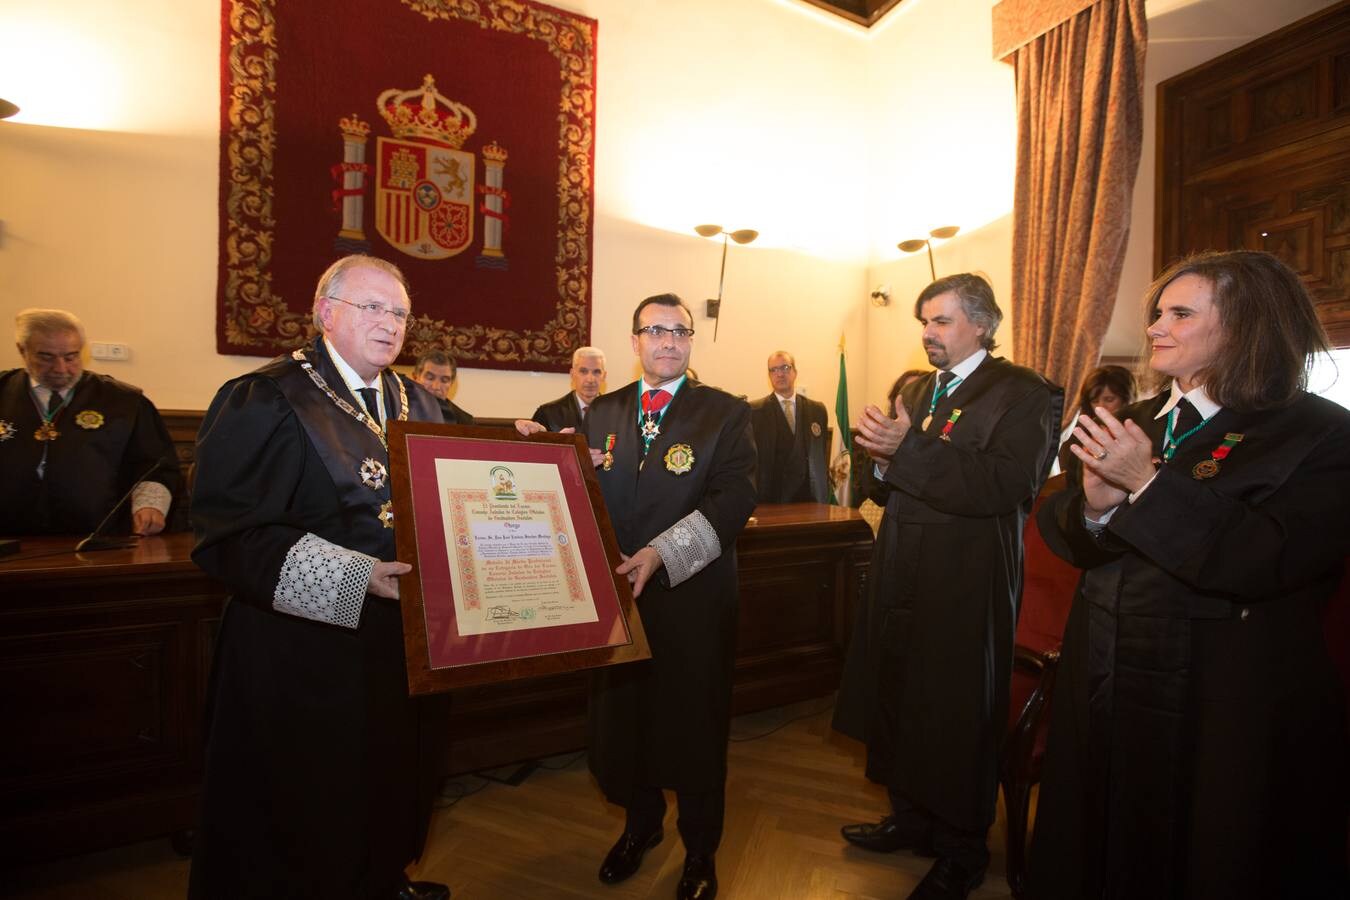 Medalla de Oro al Mérito Profesional para José Esteban Sánchez Montoya en el acto institucional del Colegio de Graduados Sociales de Granada